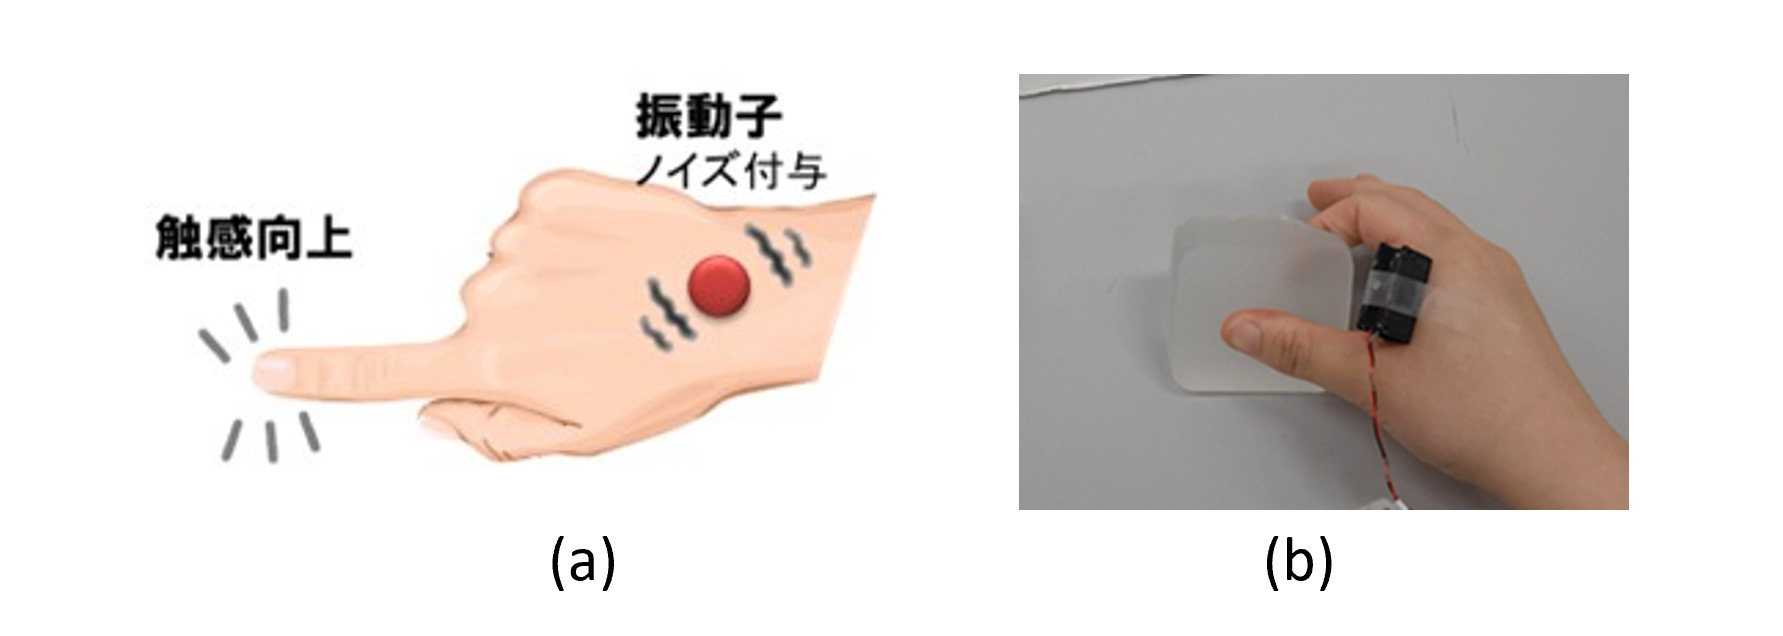 確率共鳴を用いた指先触知覚能力を向上するシステム．(a)機械ノイズ付与による指先触知覚向上の図，(b)実環境における実験